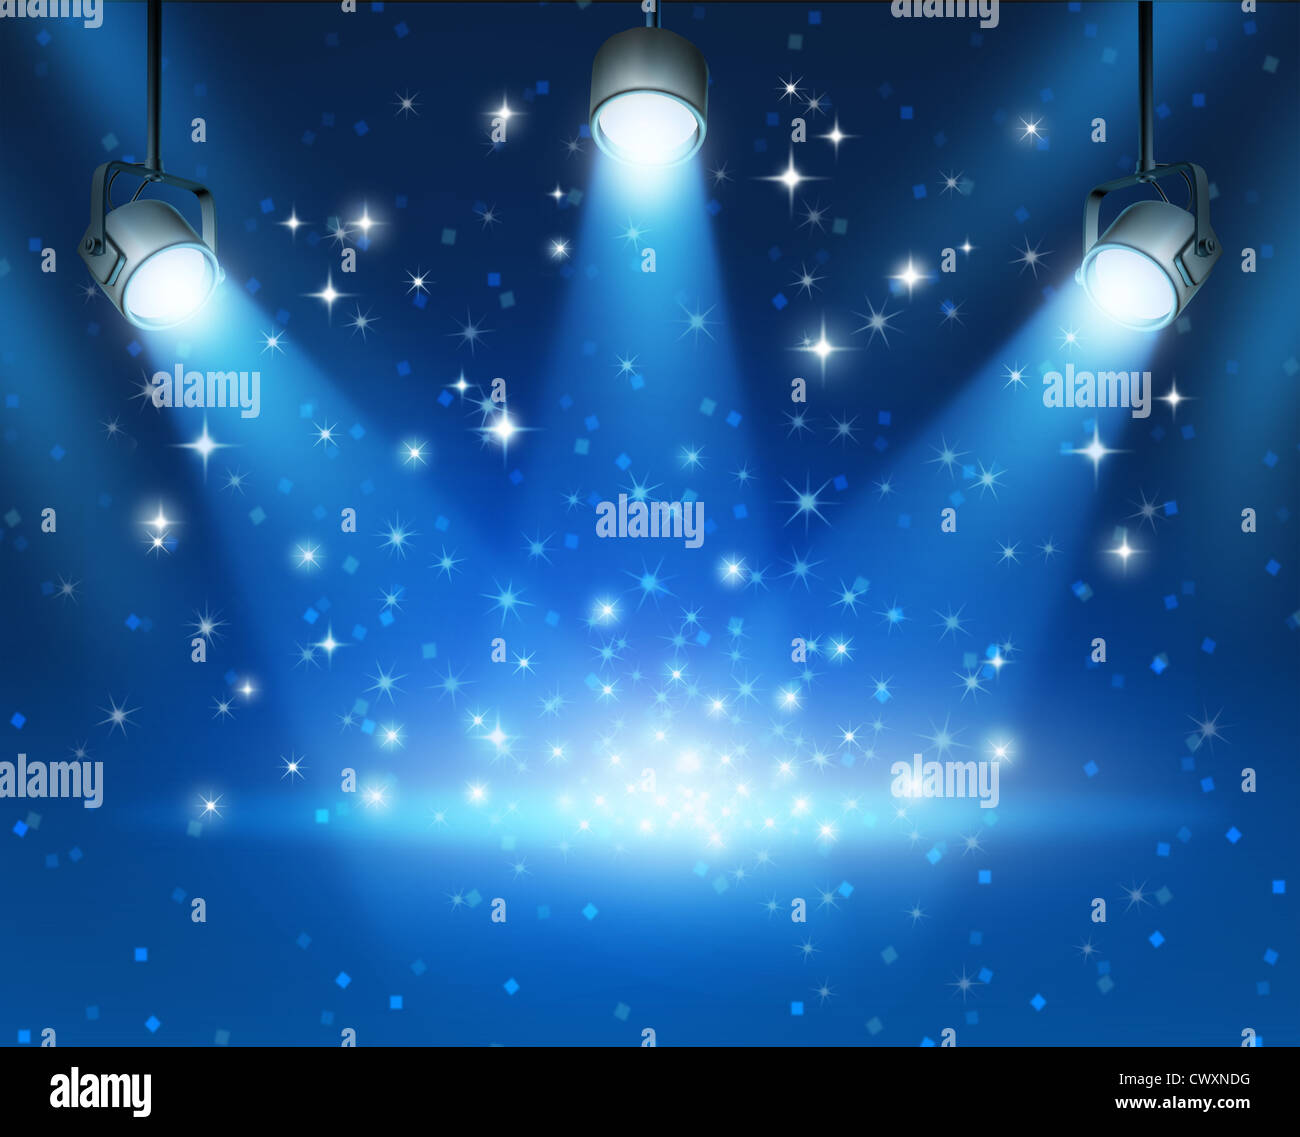 Imagen abstracta azul mágica del concierto contra una iluminación brillante ilustración de fondo oscuro con destellos brillantes con un espacio en blanco Foto de stock